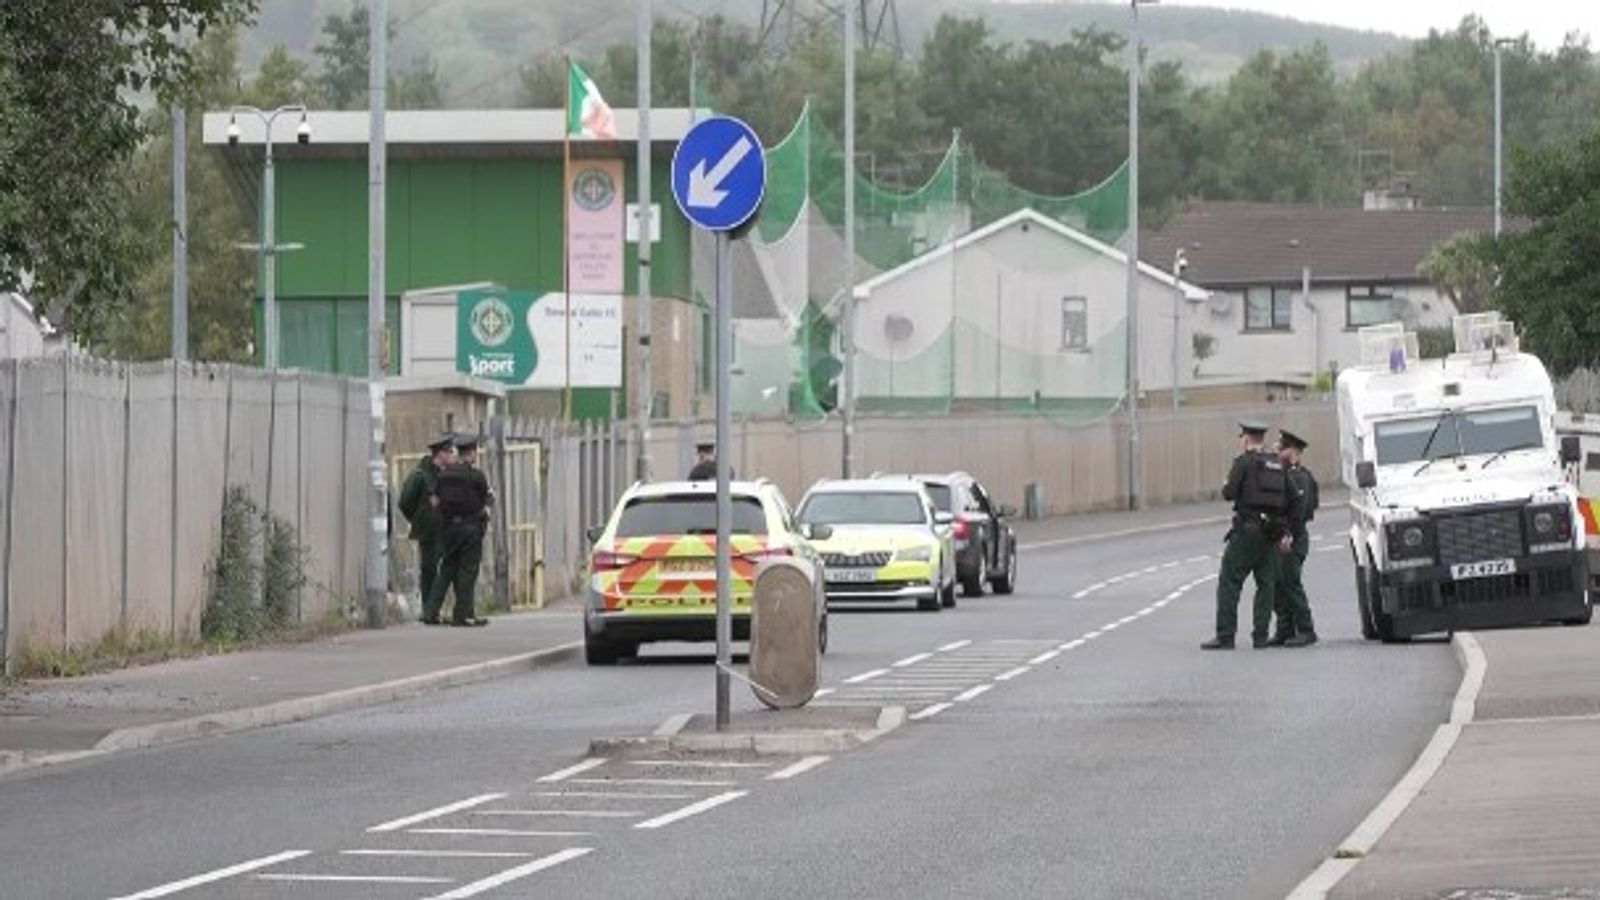 Man shot dead in social club in west Belfast